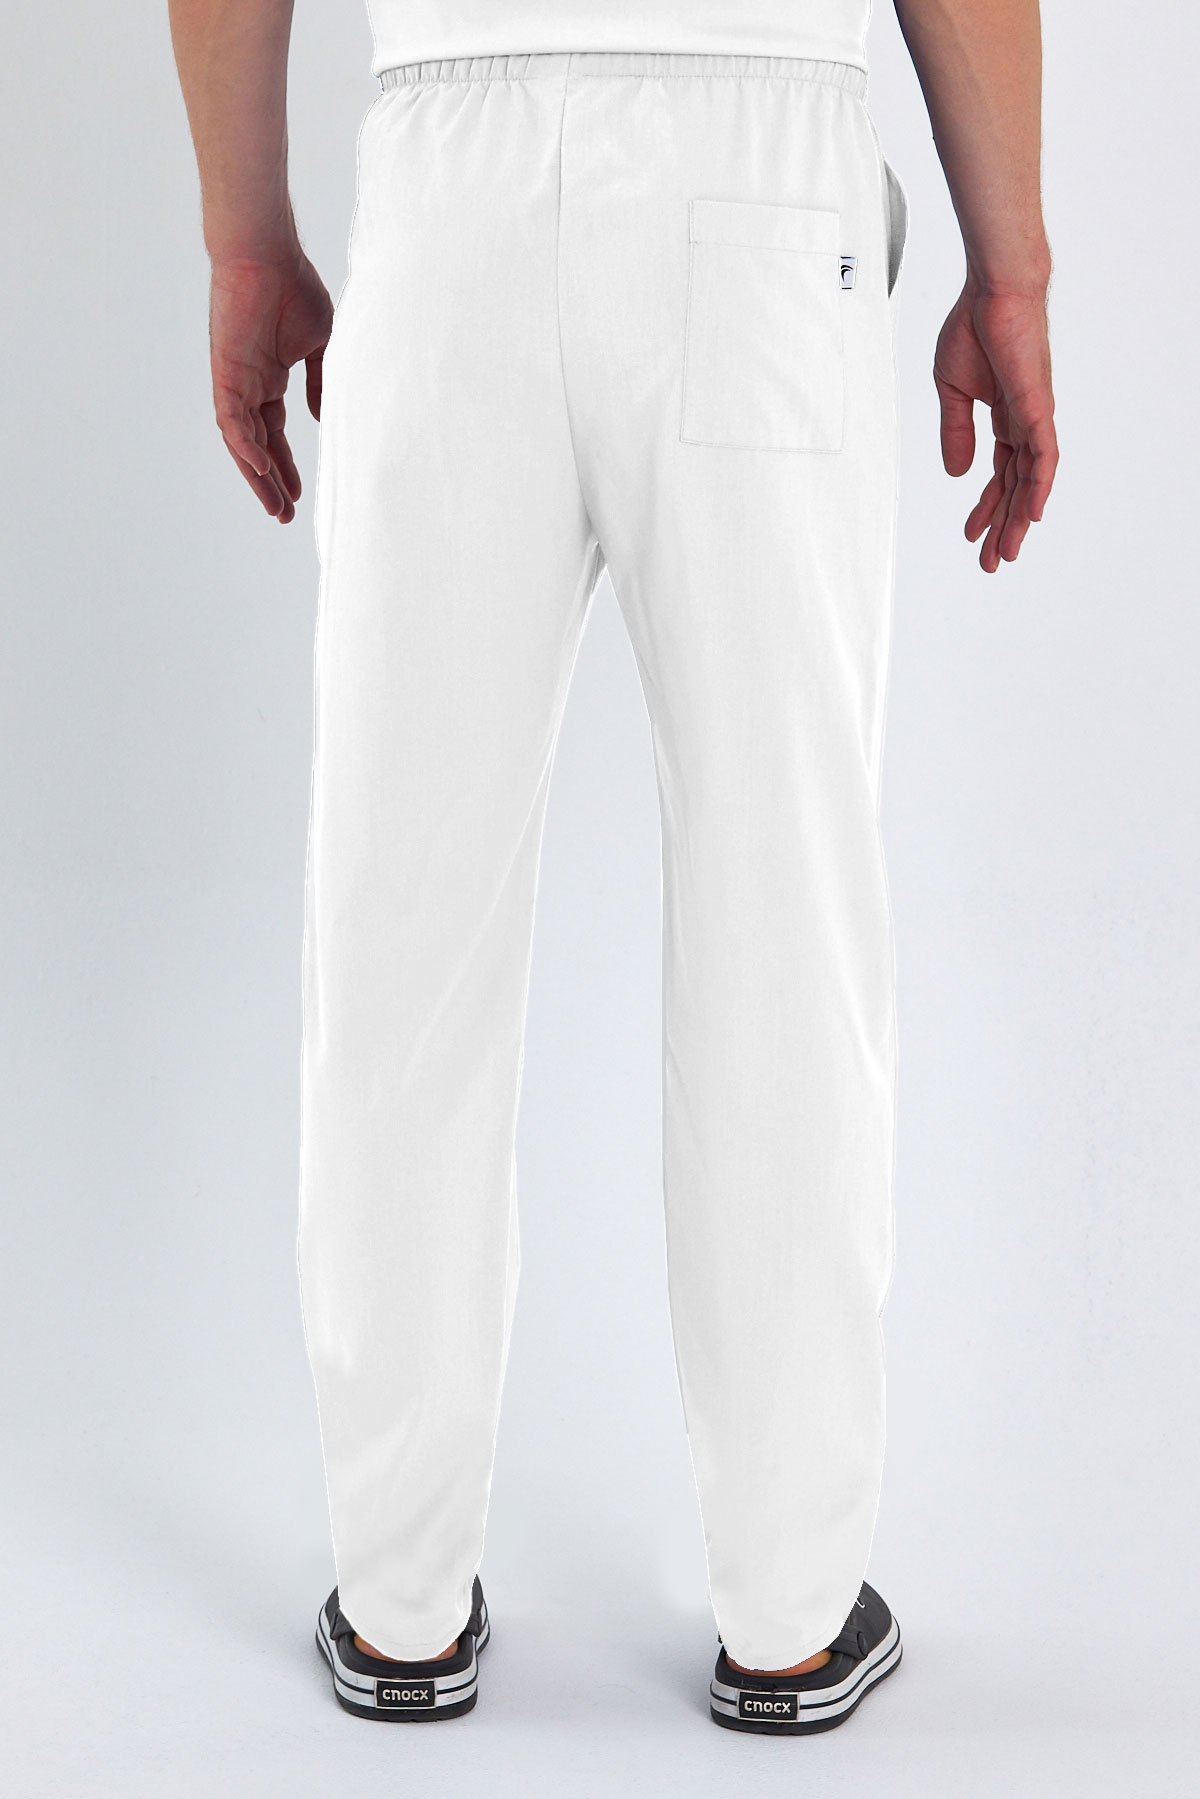 1009 Basic Beyaz Pantolon